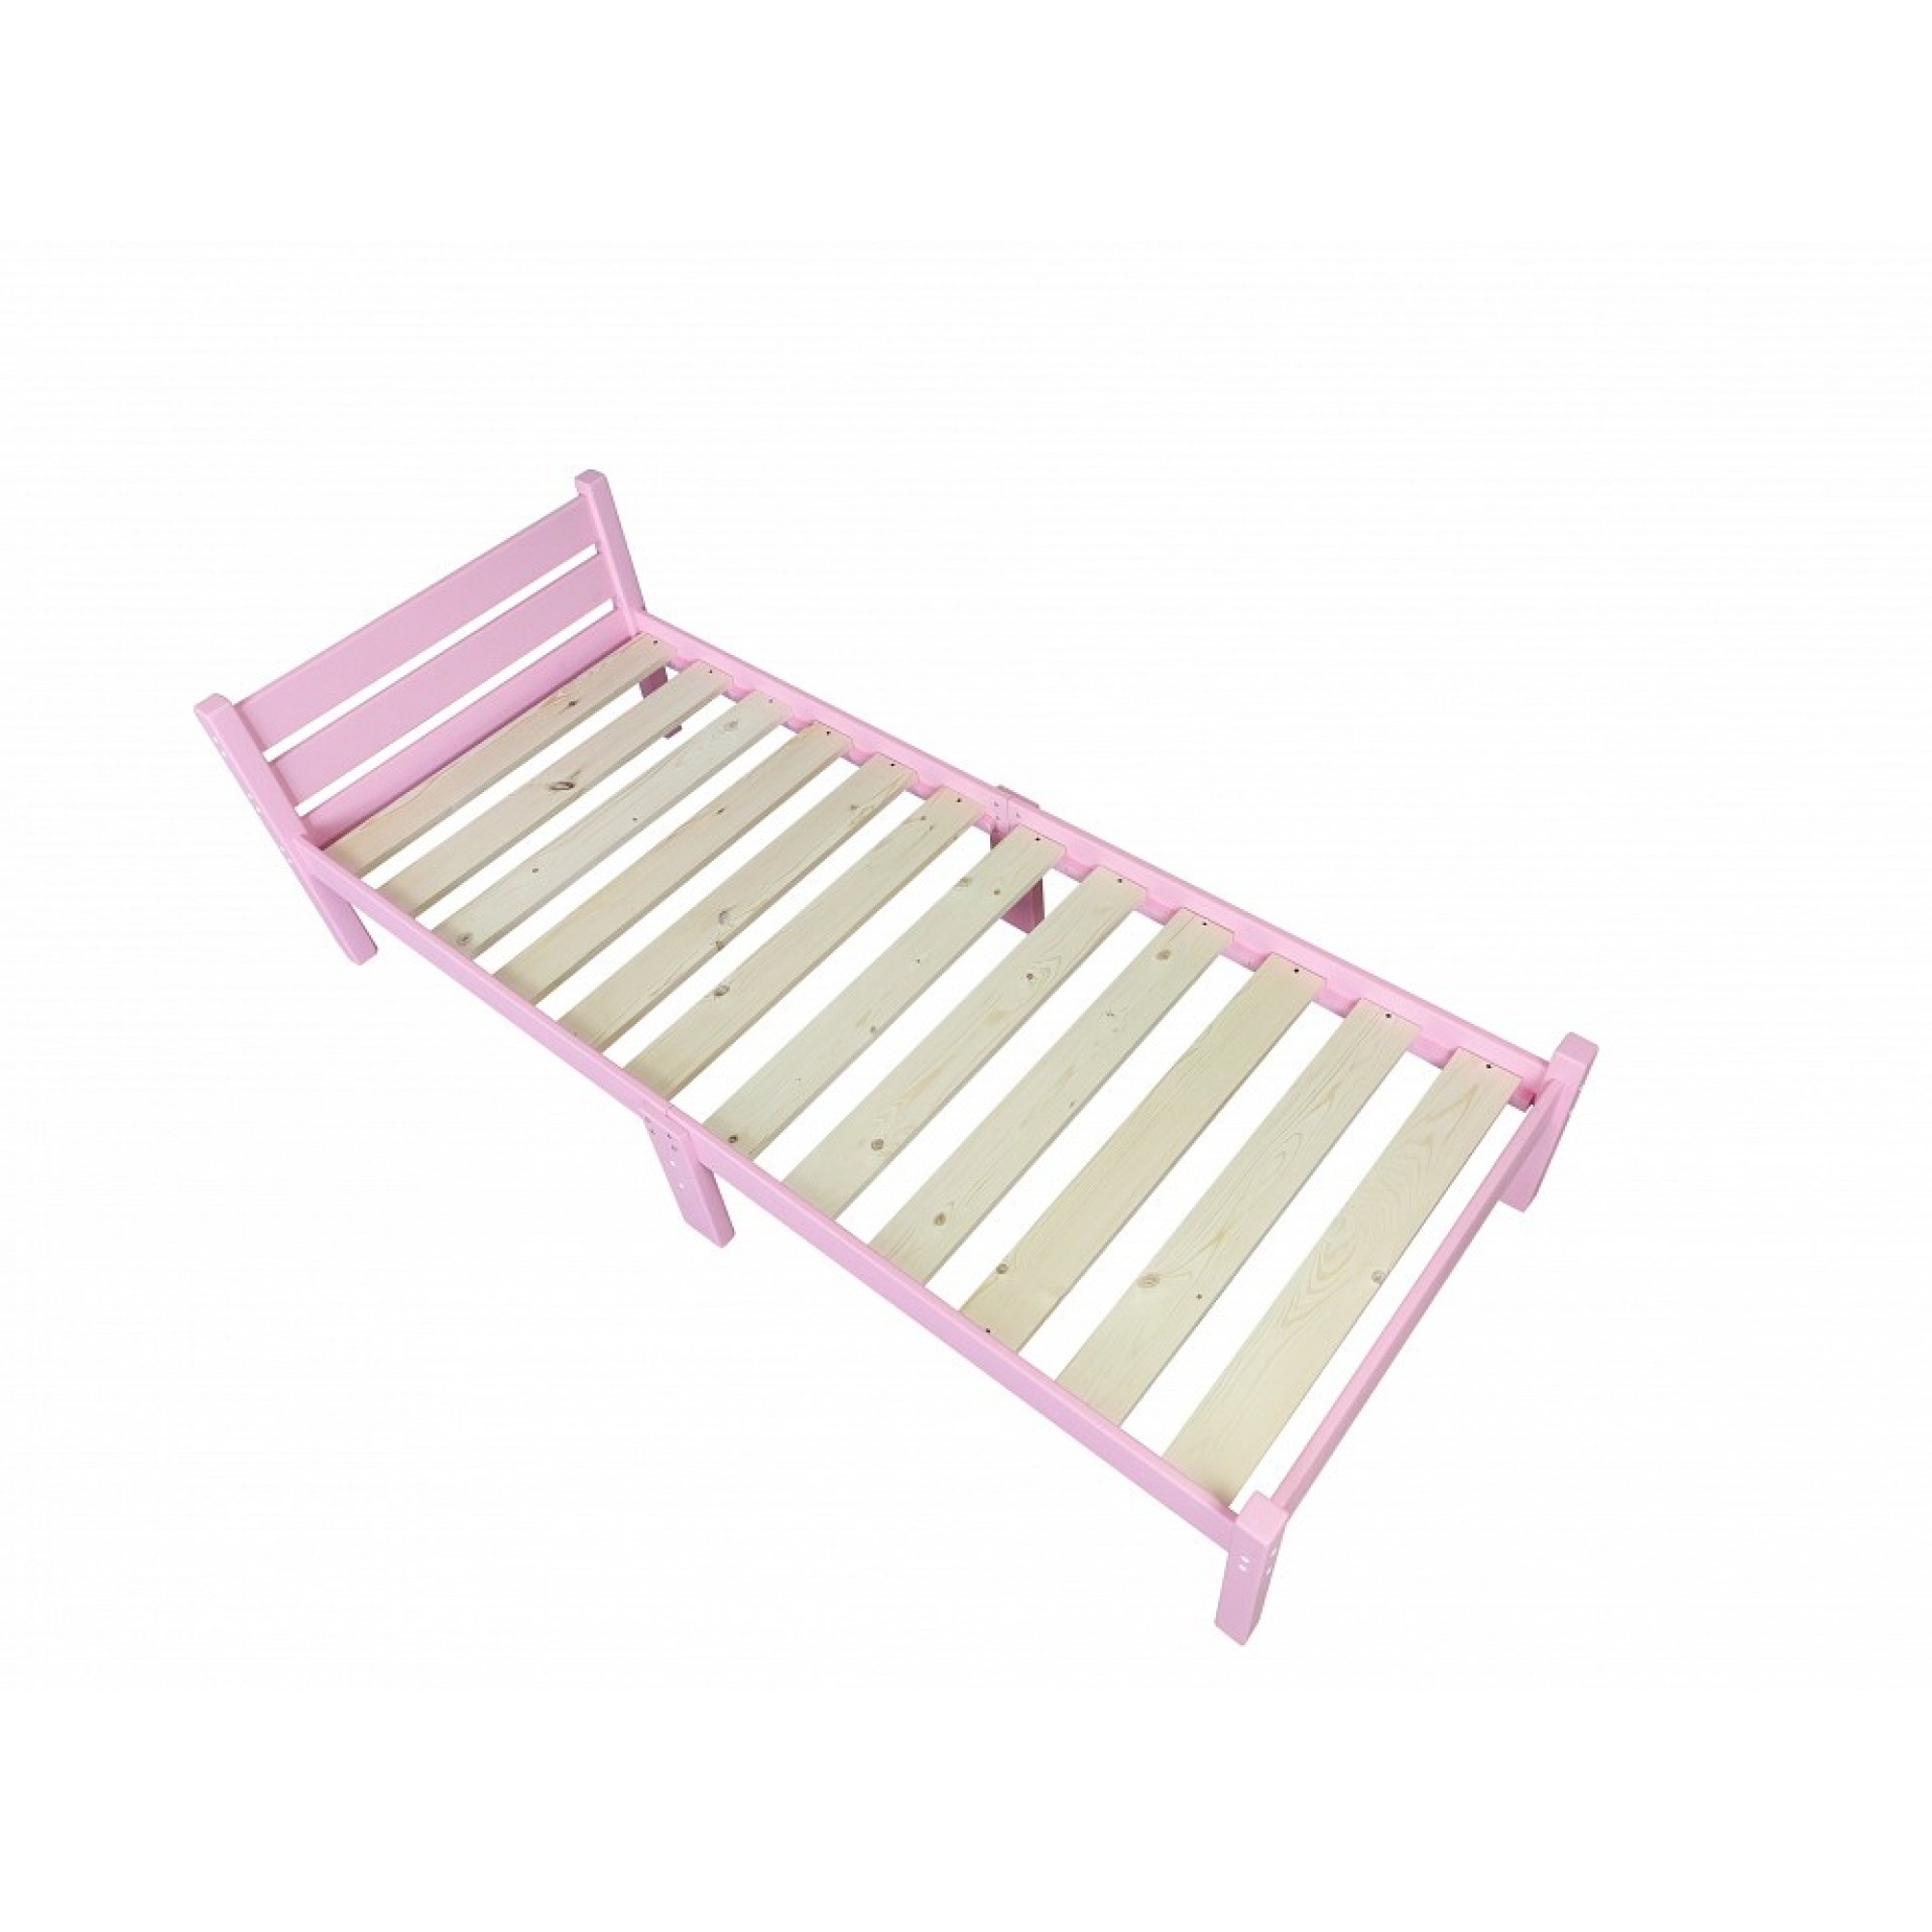 Кровать односпальная Компакт 2000x800 розовый    SLR_kompakt80roz